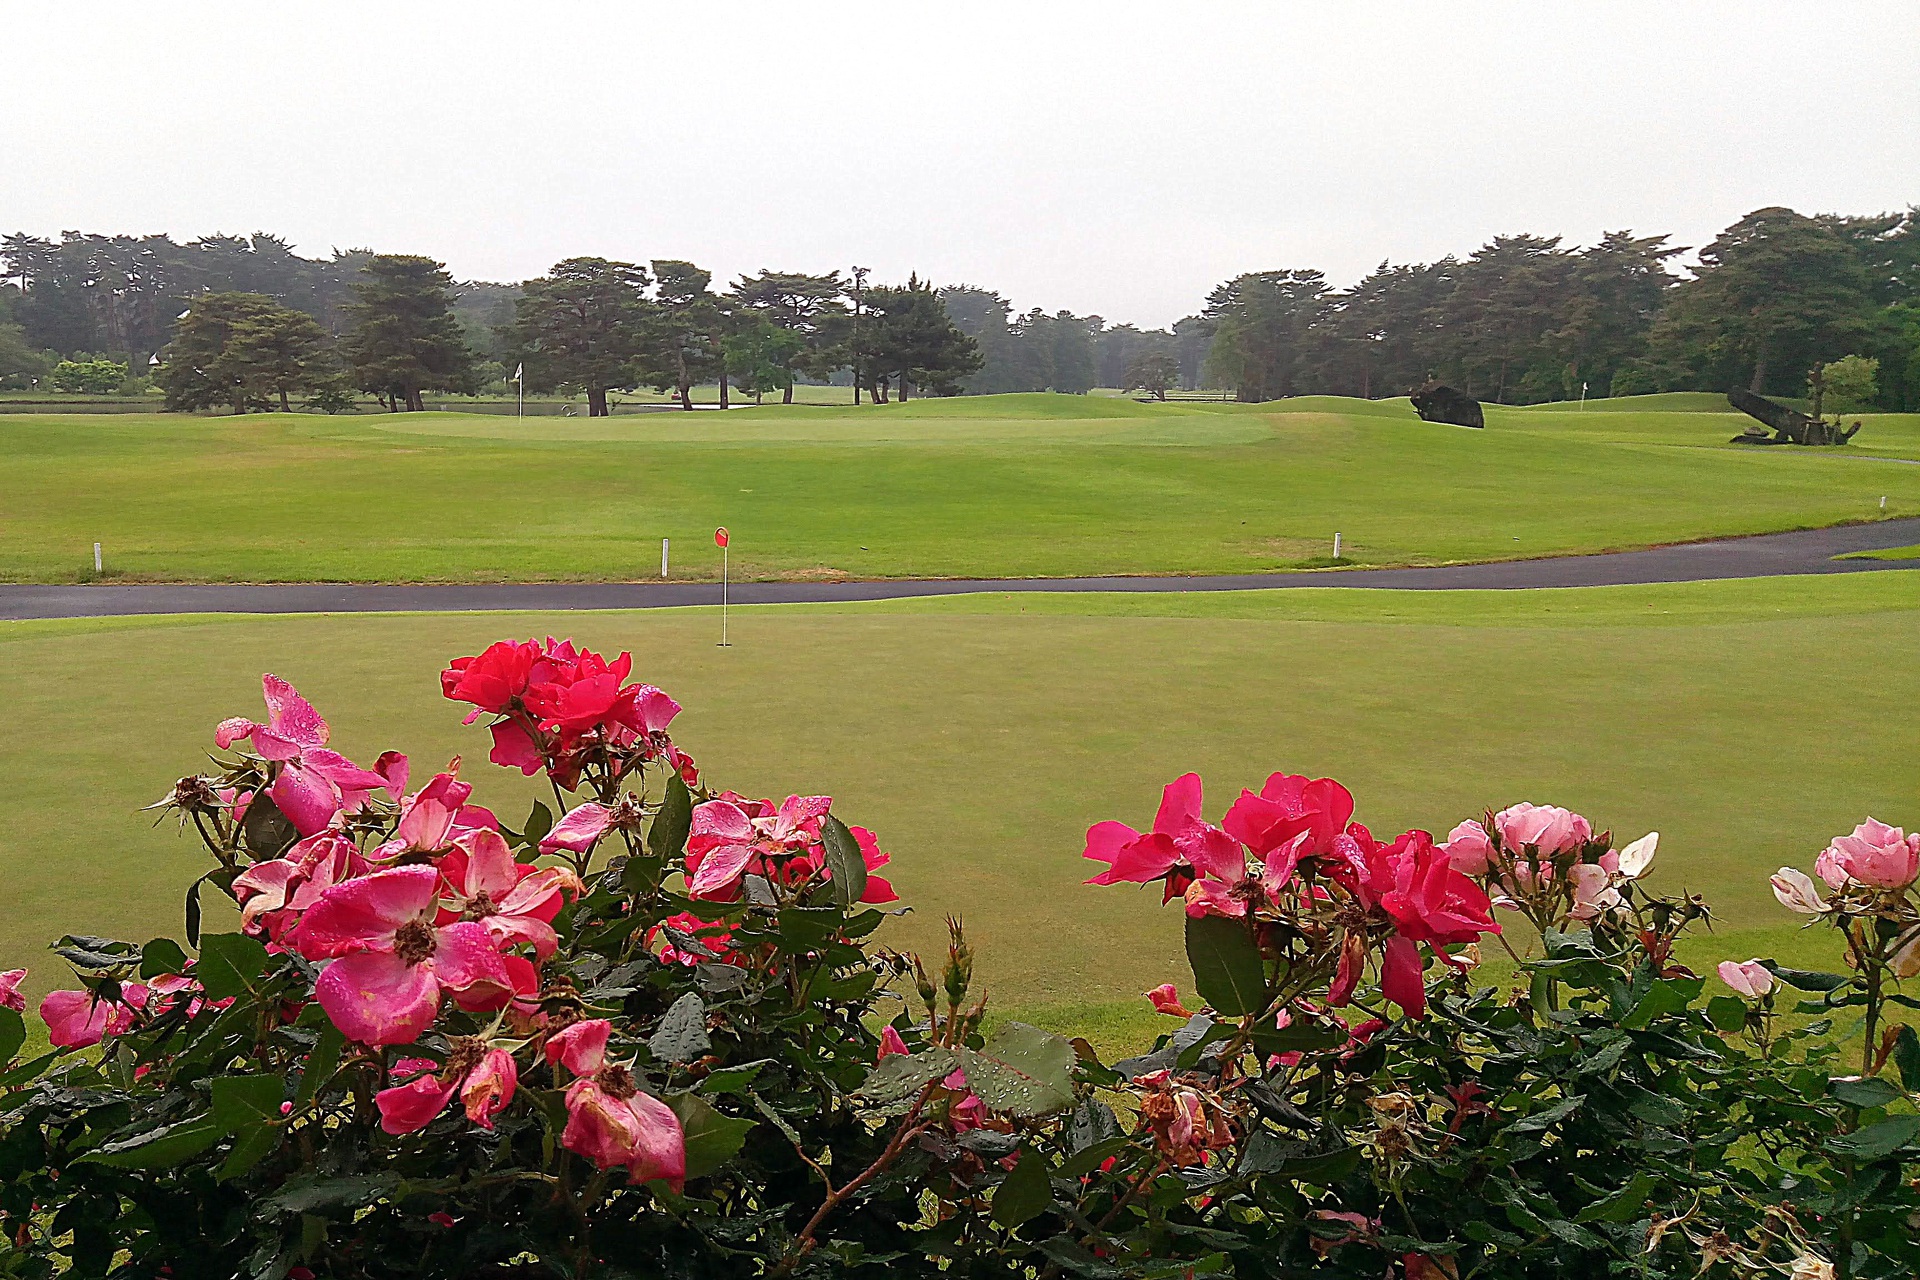 日本の風景 バラの咲き乱れるゴルフ場 壁紙19x1280 壁紙館